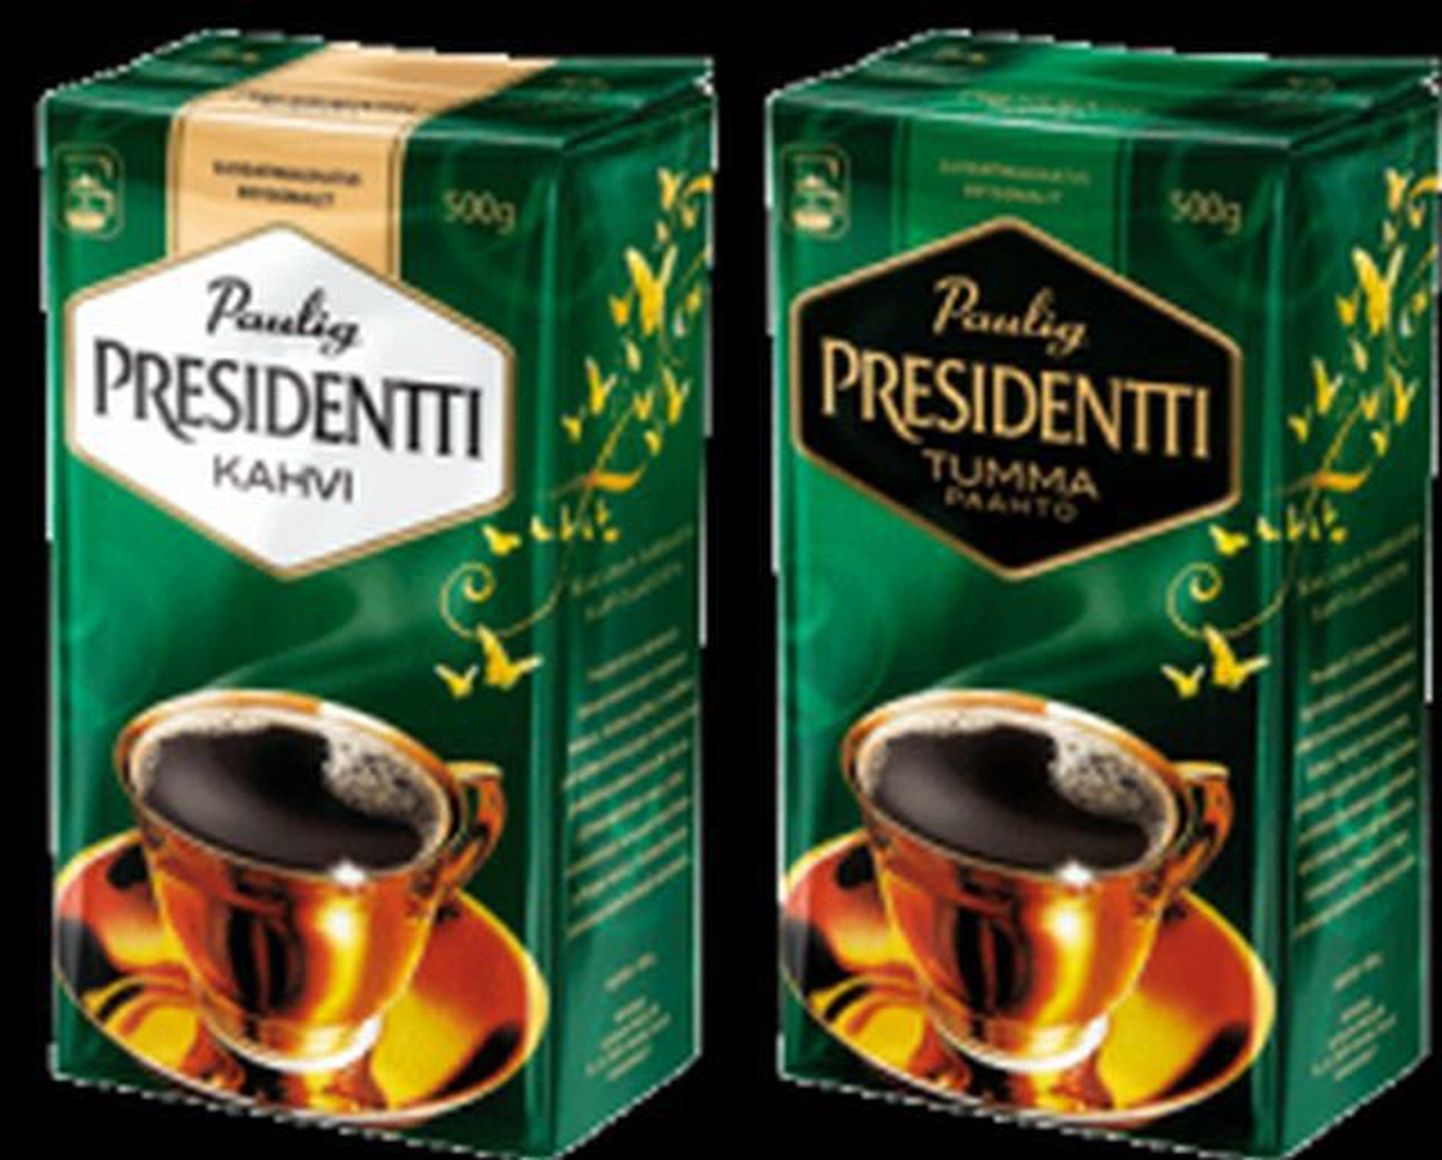 Pauligis toodetav kohv Presidentti